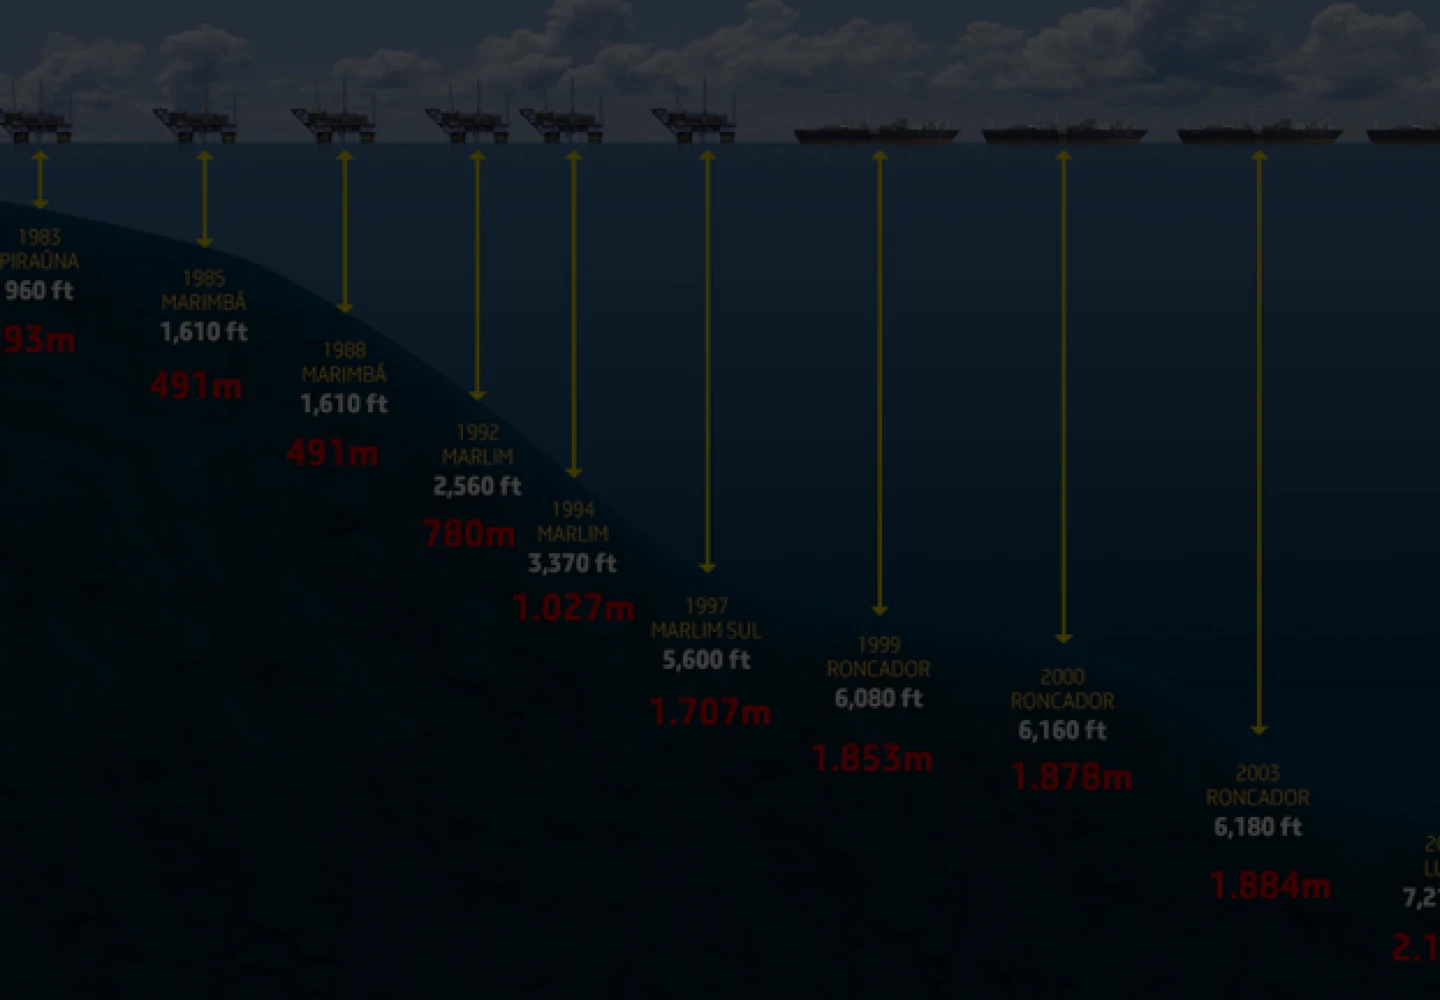 Ilustração mostrando o aumento das profundidades marítimas alcançadas por operações da Petrobras com o passar dos anos.